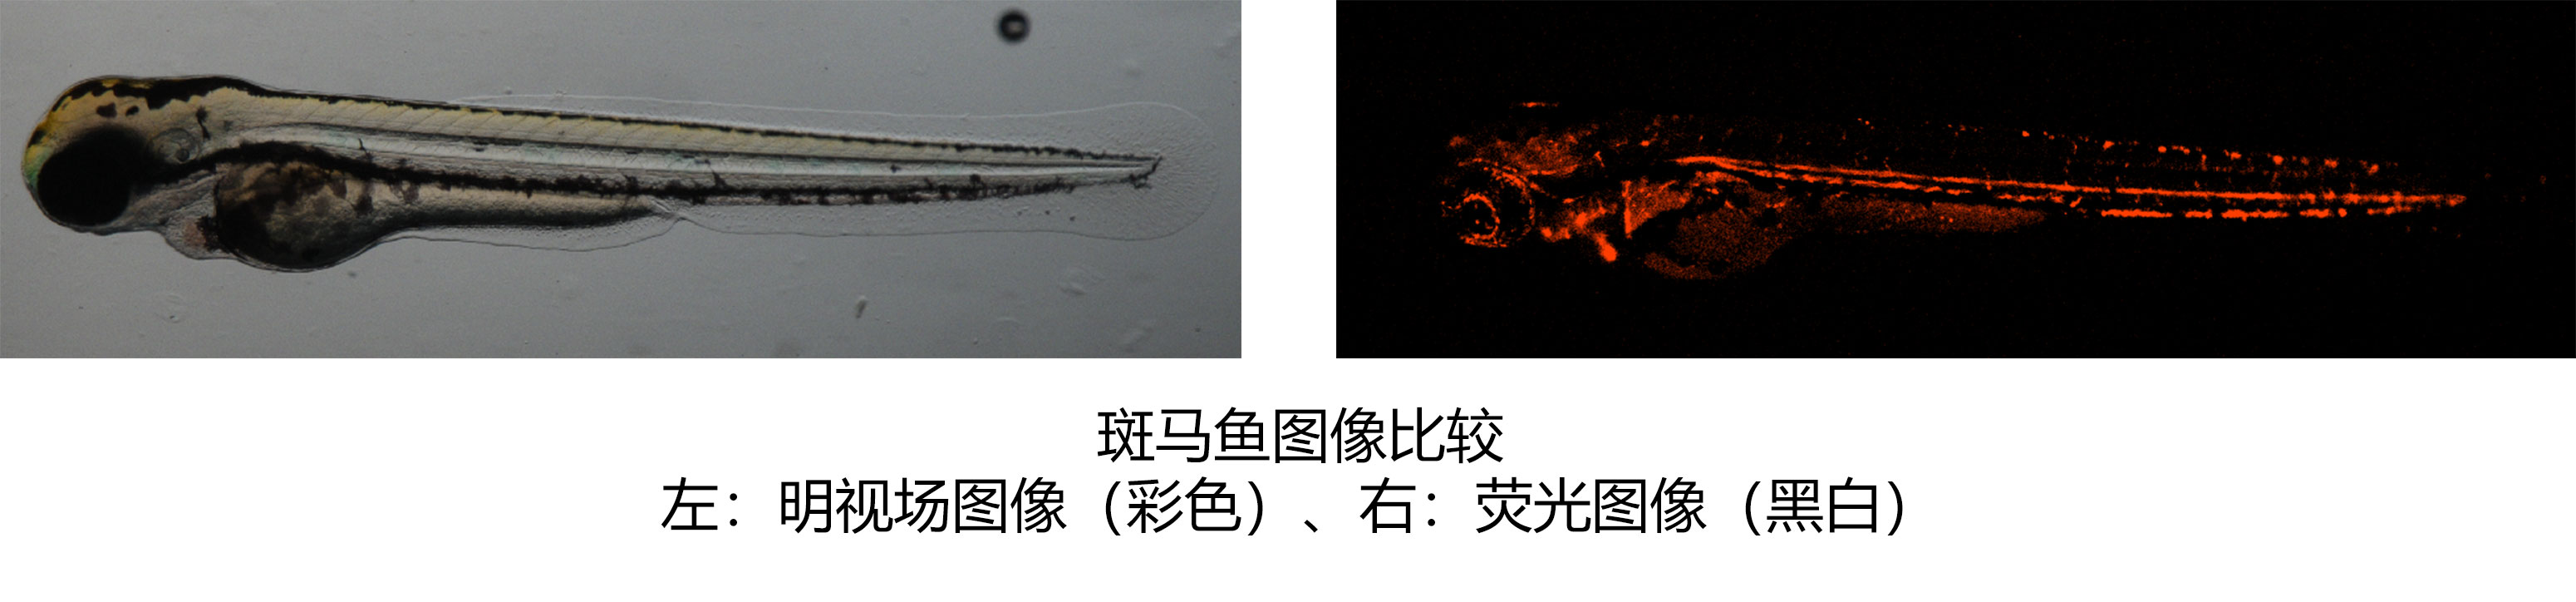 斑马鱼图像比较 左：明视场图像（彩色）、右：荧光图像（黑白）